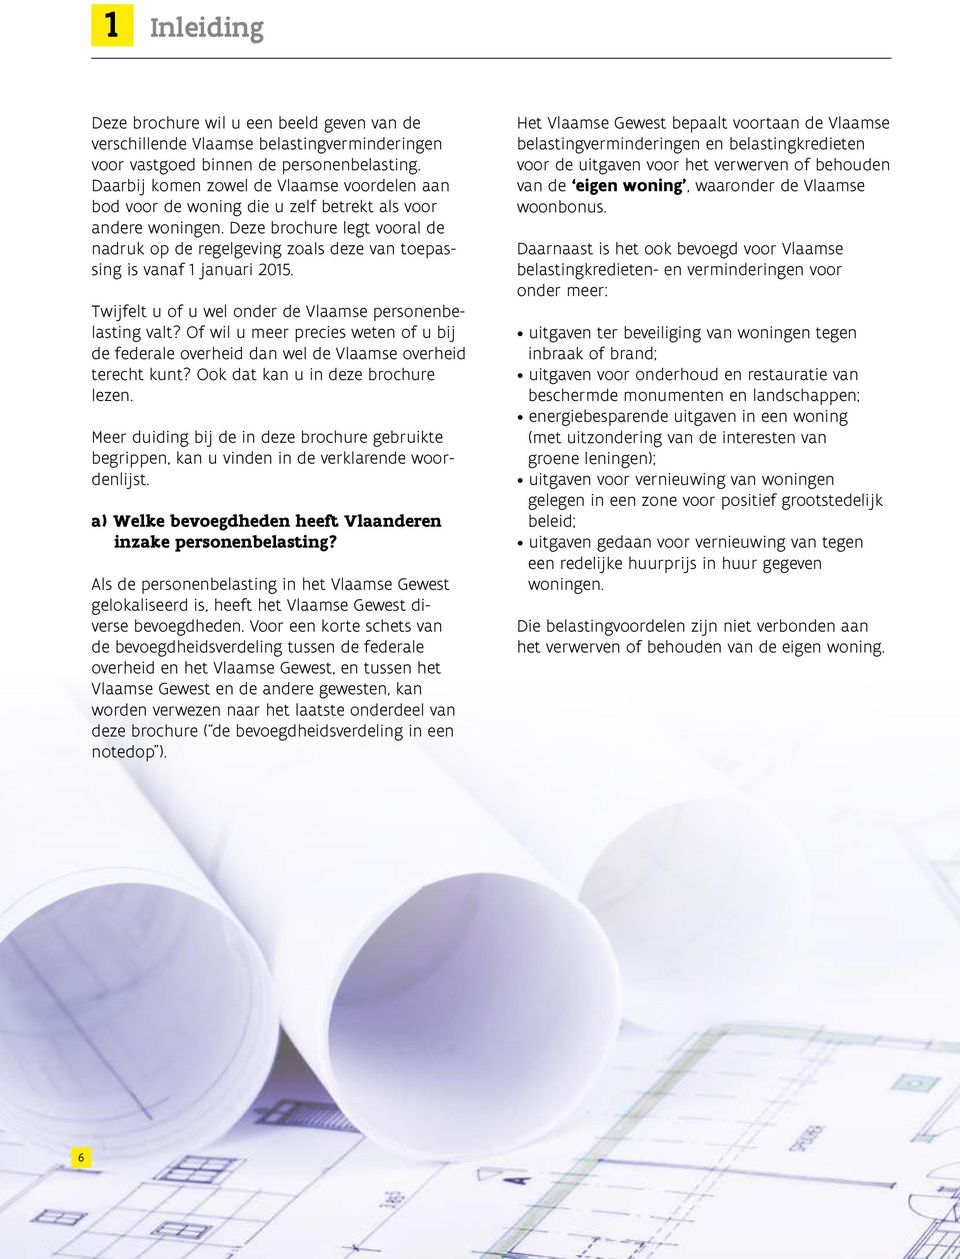 Deze brochure legt vooral de nadruk op de regelgeving zoals deze van toepassing is vanaf 1 januari 2015. Twijfelt u of u wel onder de Vlaamse personenbelasting valt?